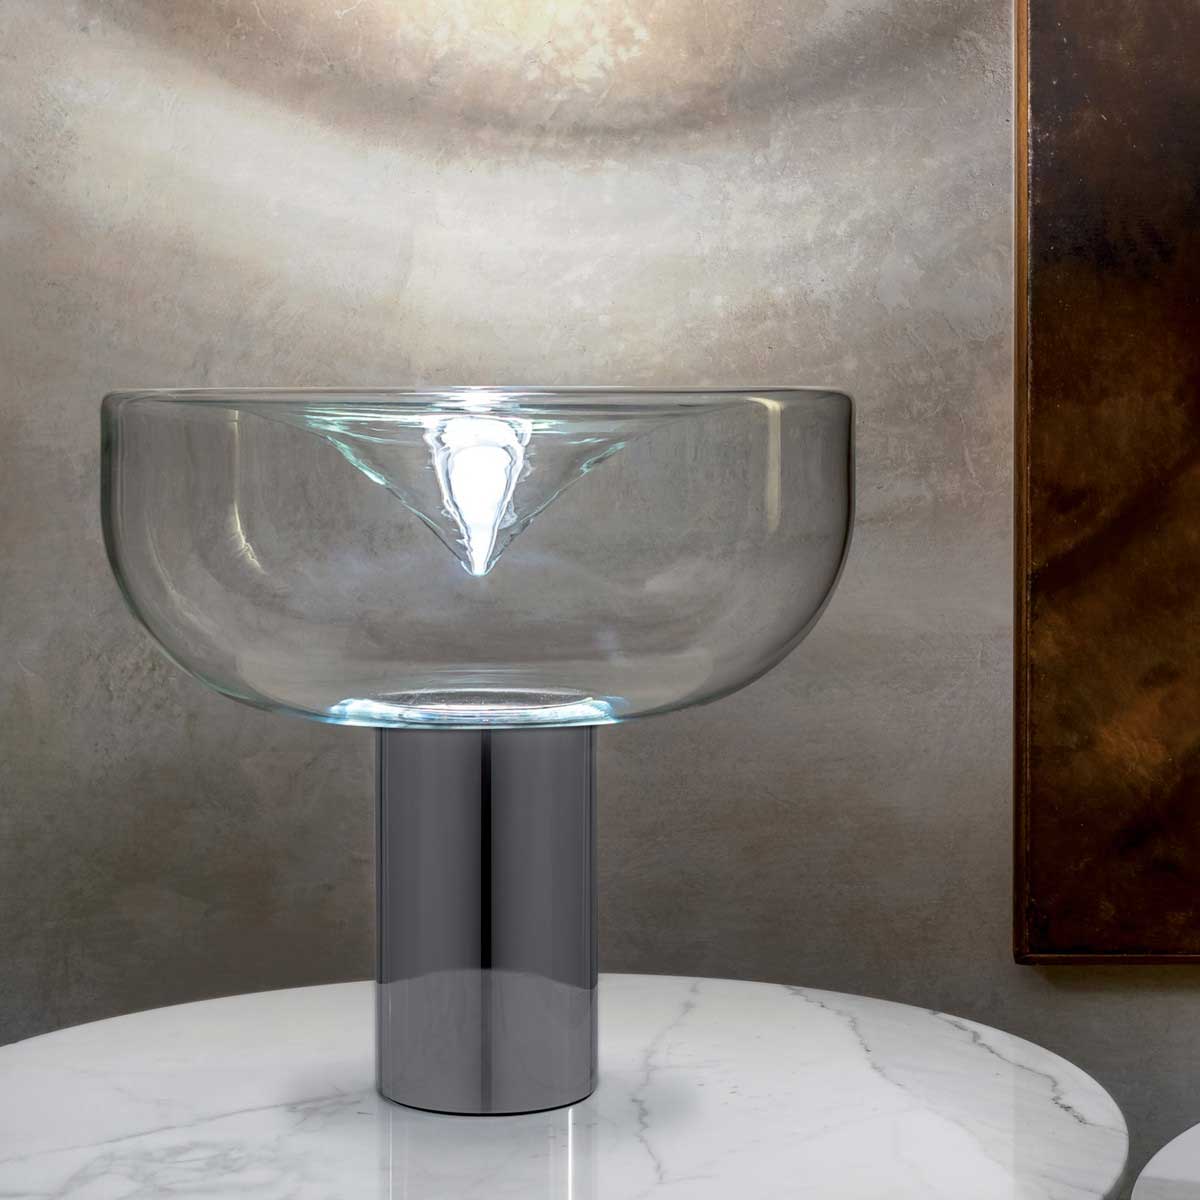 Lampada da tavolo in vetro soffiato di Murano e metallo cromato. Design studio Toso, Massari & Associates. LED RGB e telecomando inclusi. Consegna inclusa.